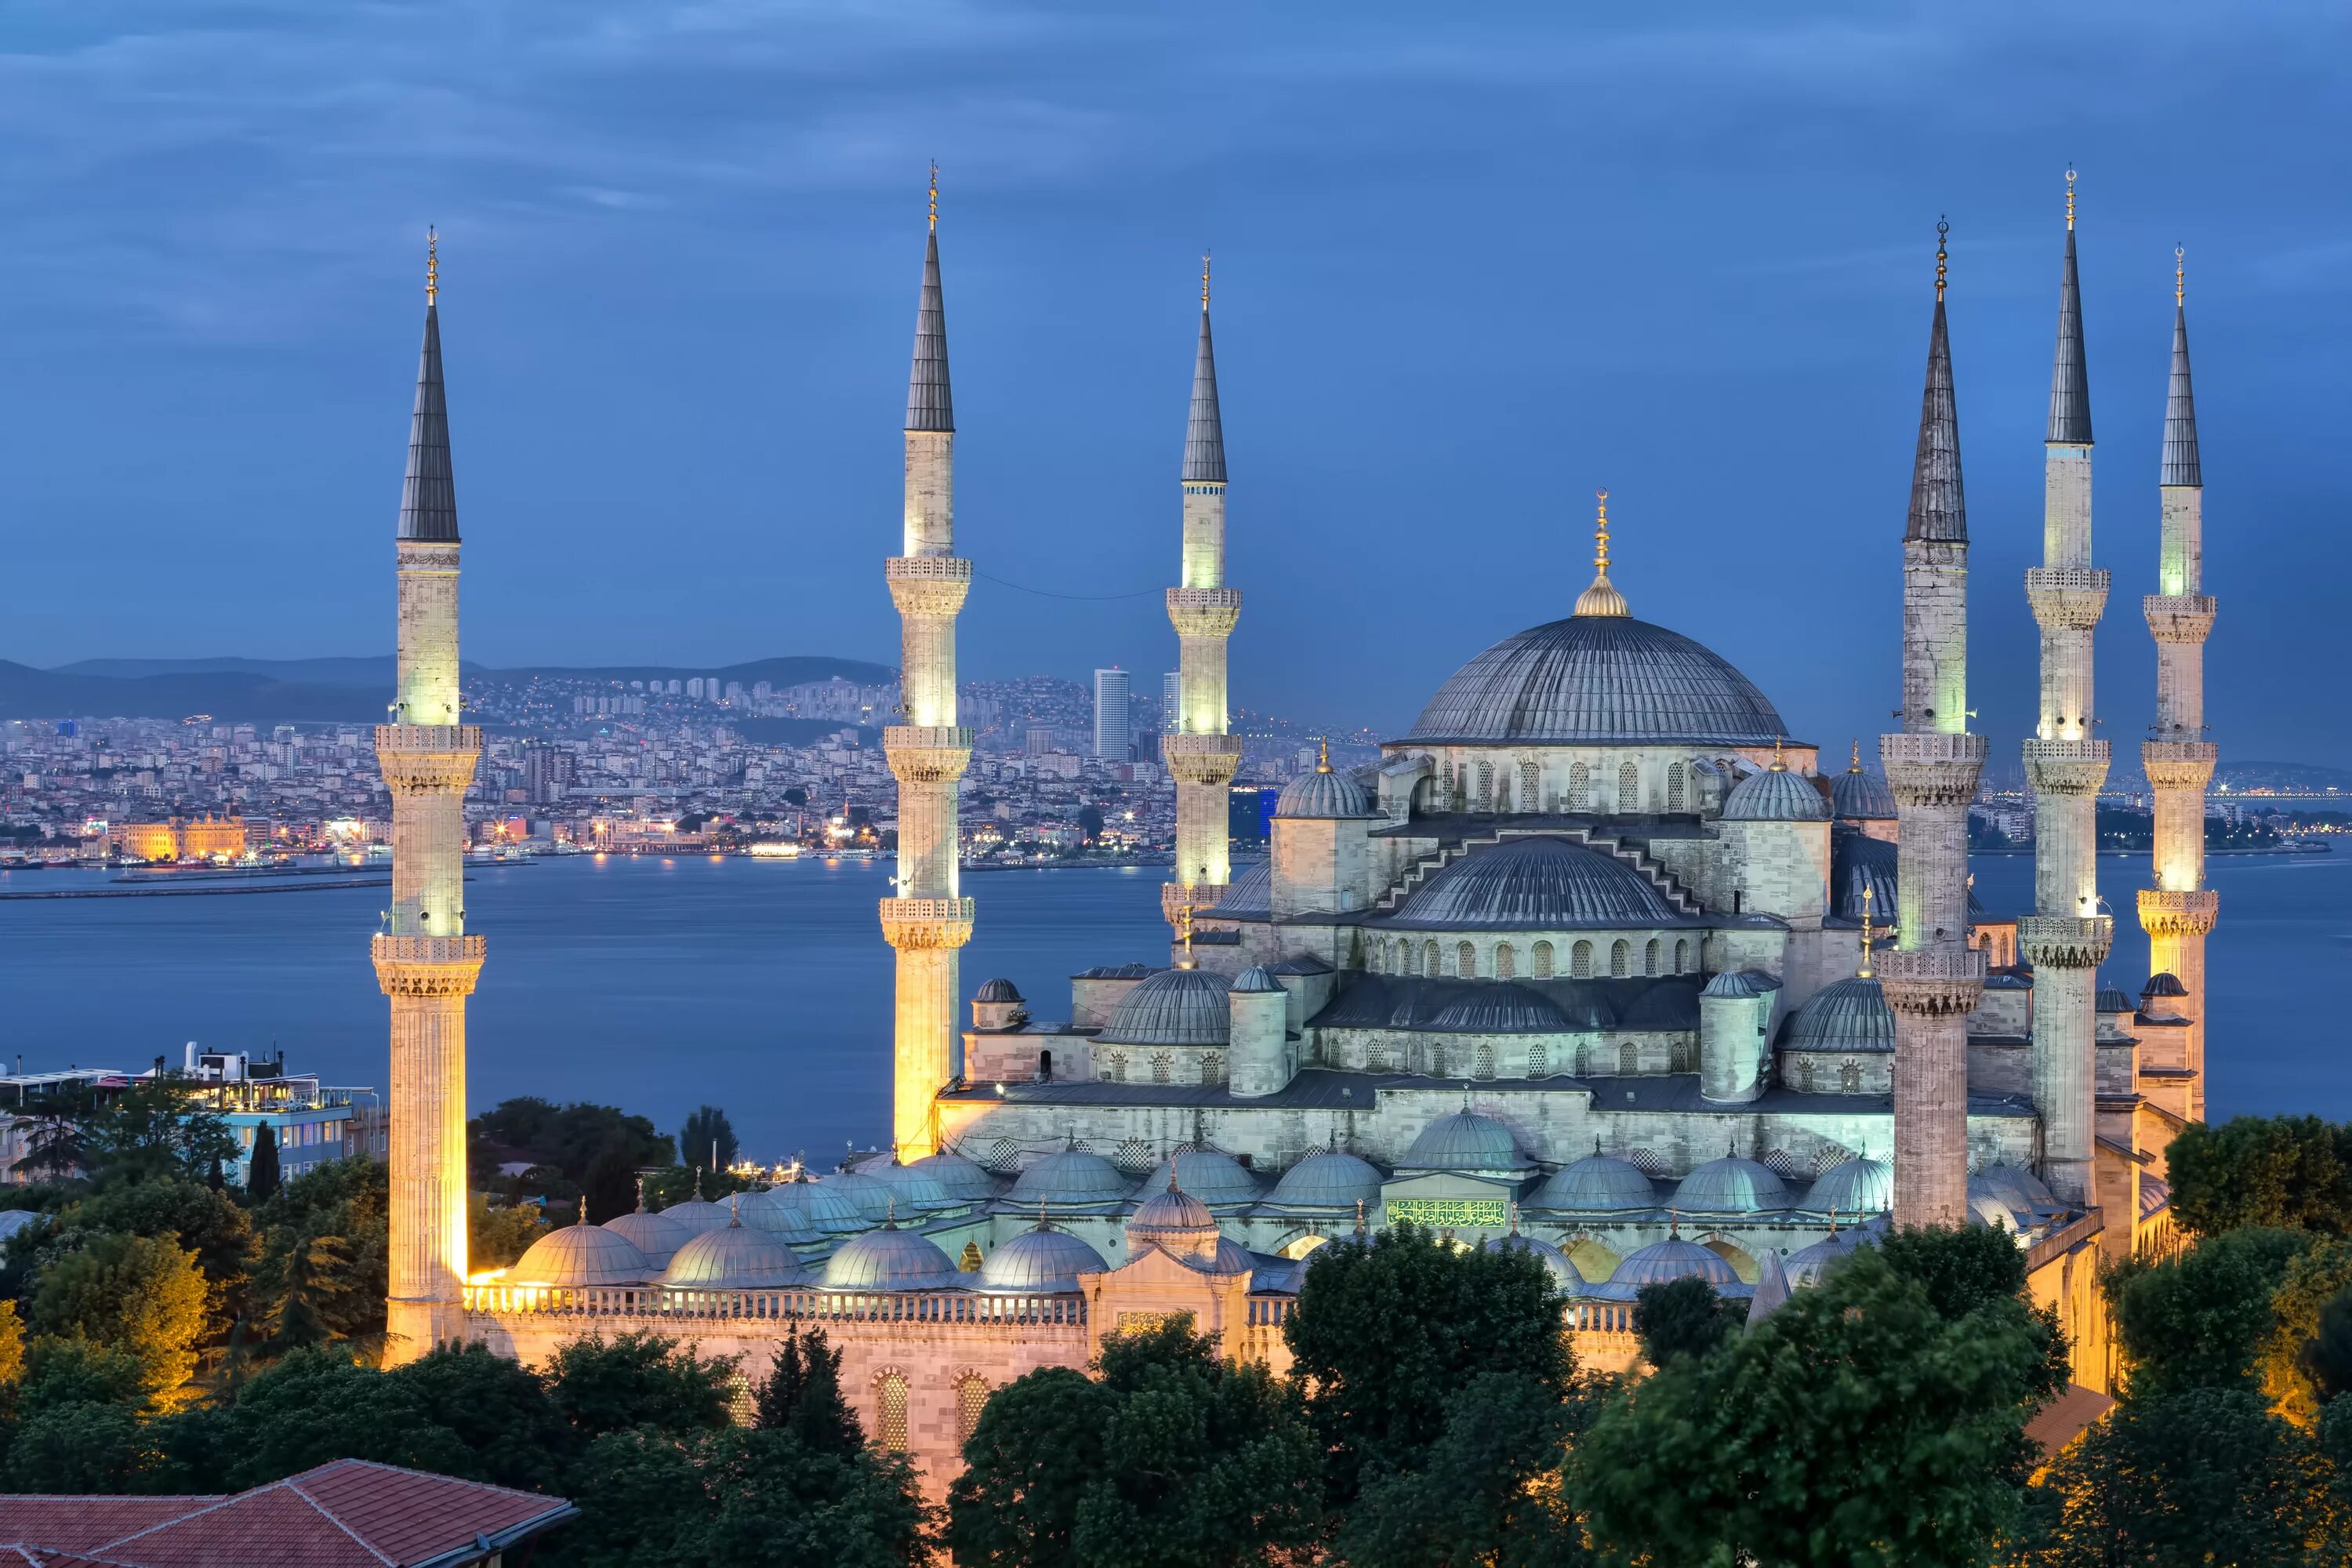 Город султанахмет. Голубая мечеть Султанахмет Турция Стамбул. Голубая мечеть (мечеть Султанахмет).